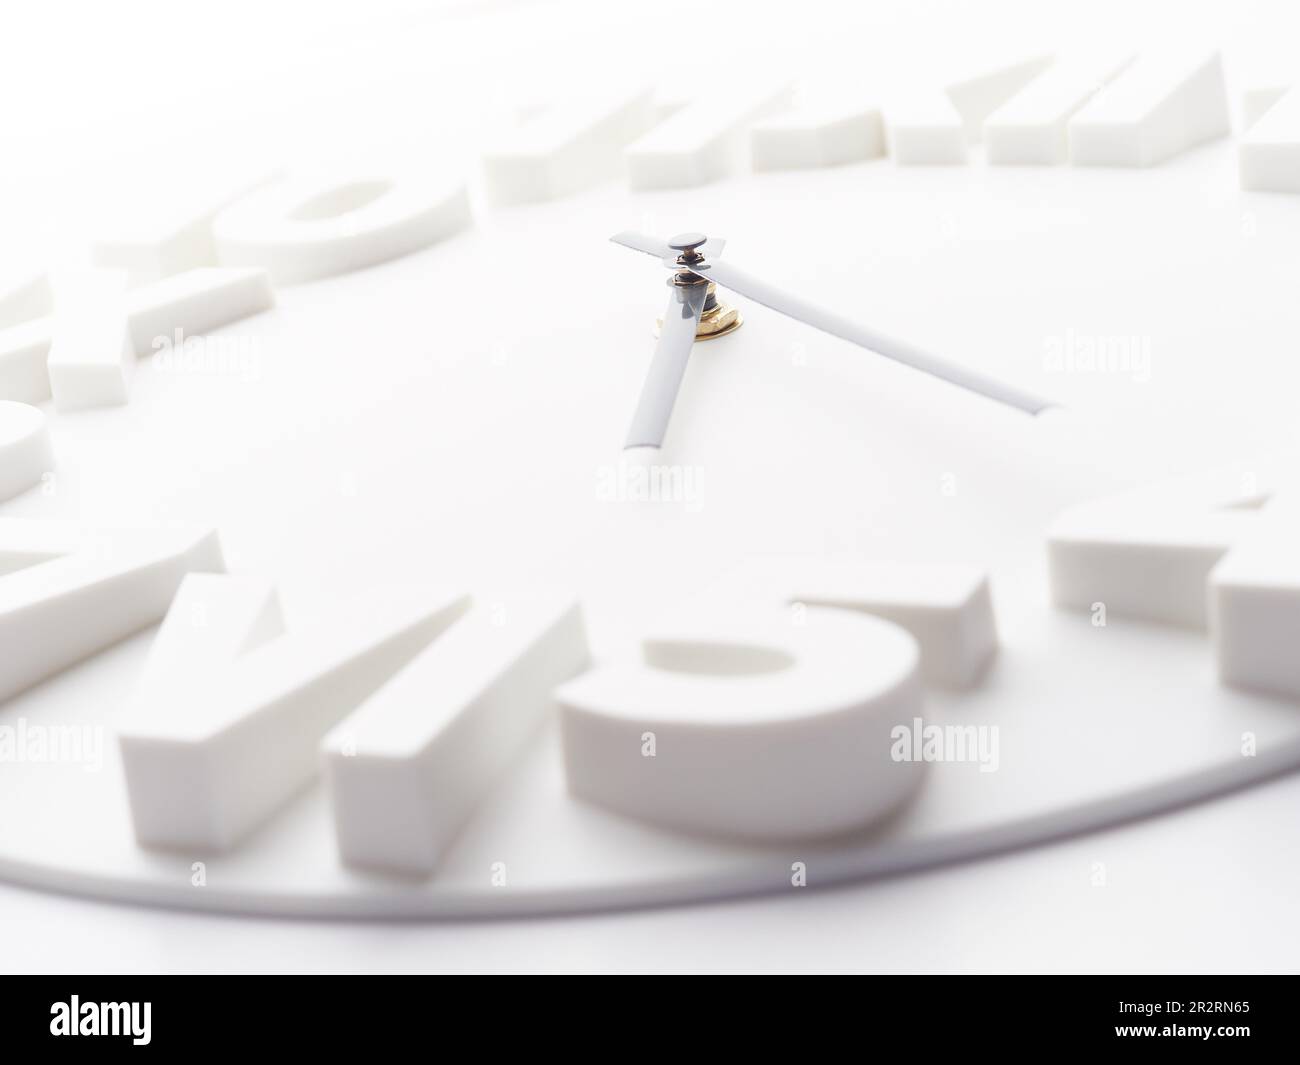 Image de gestion du temps de l'horloge murale Banque D'Images